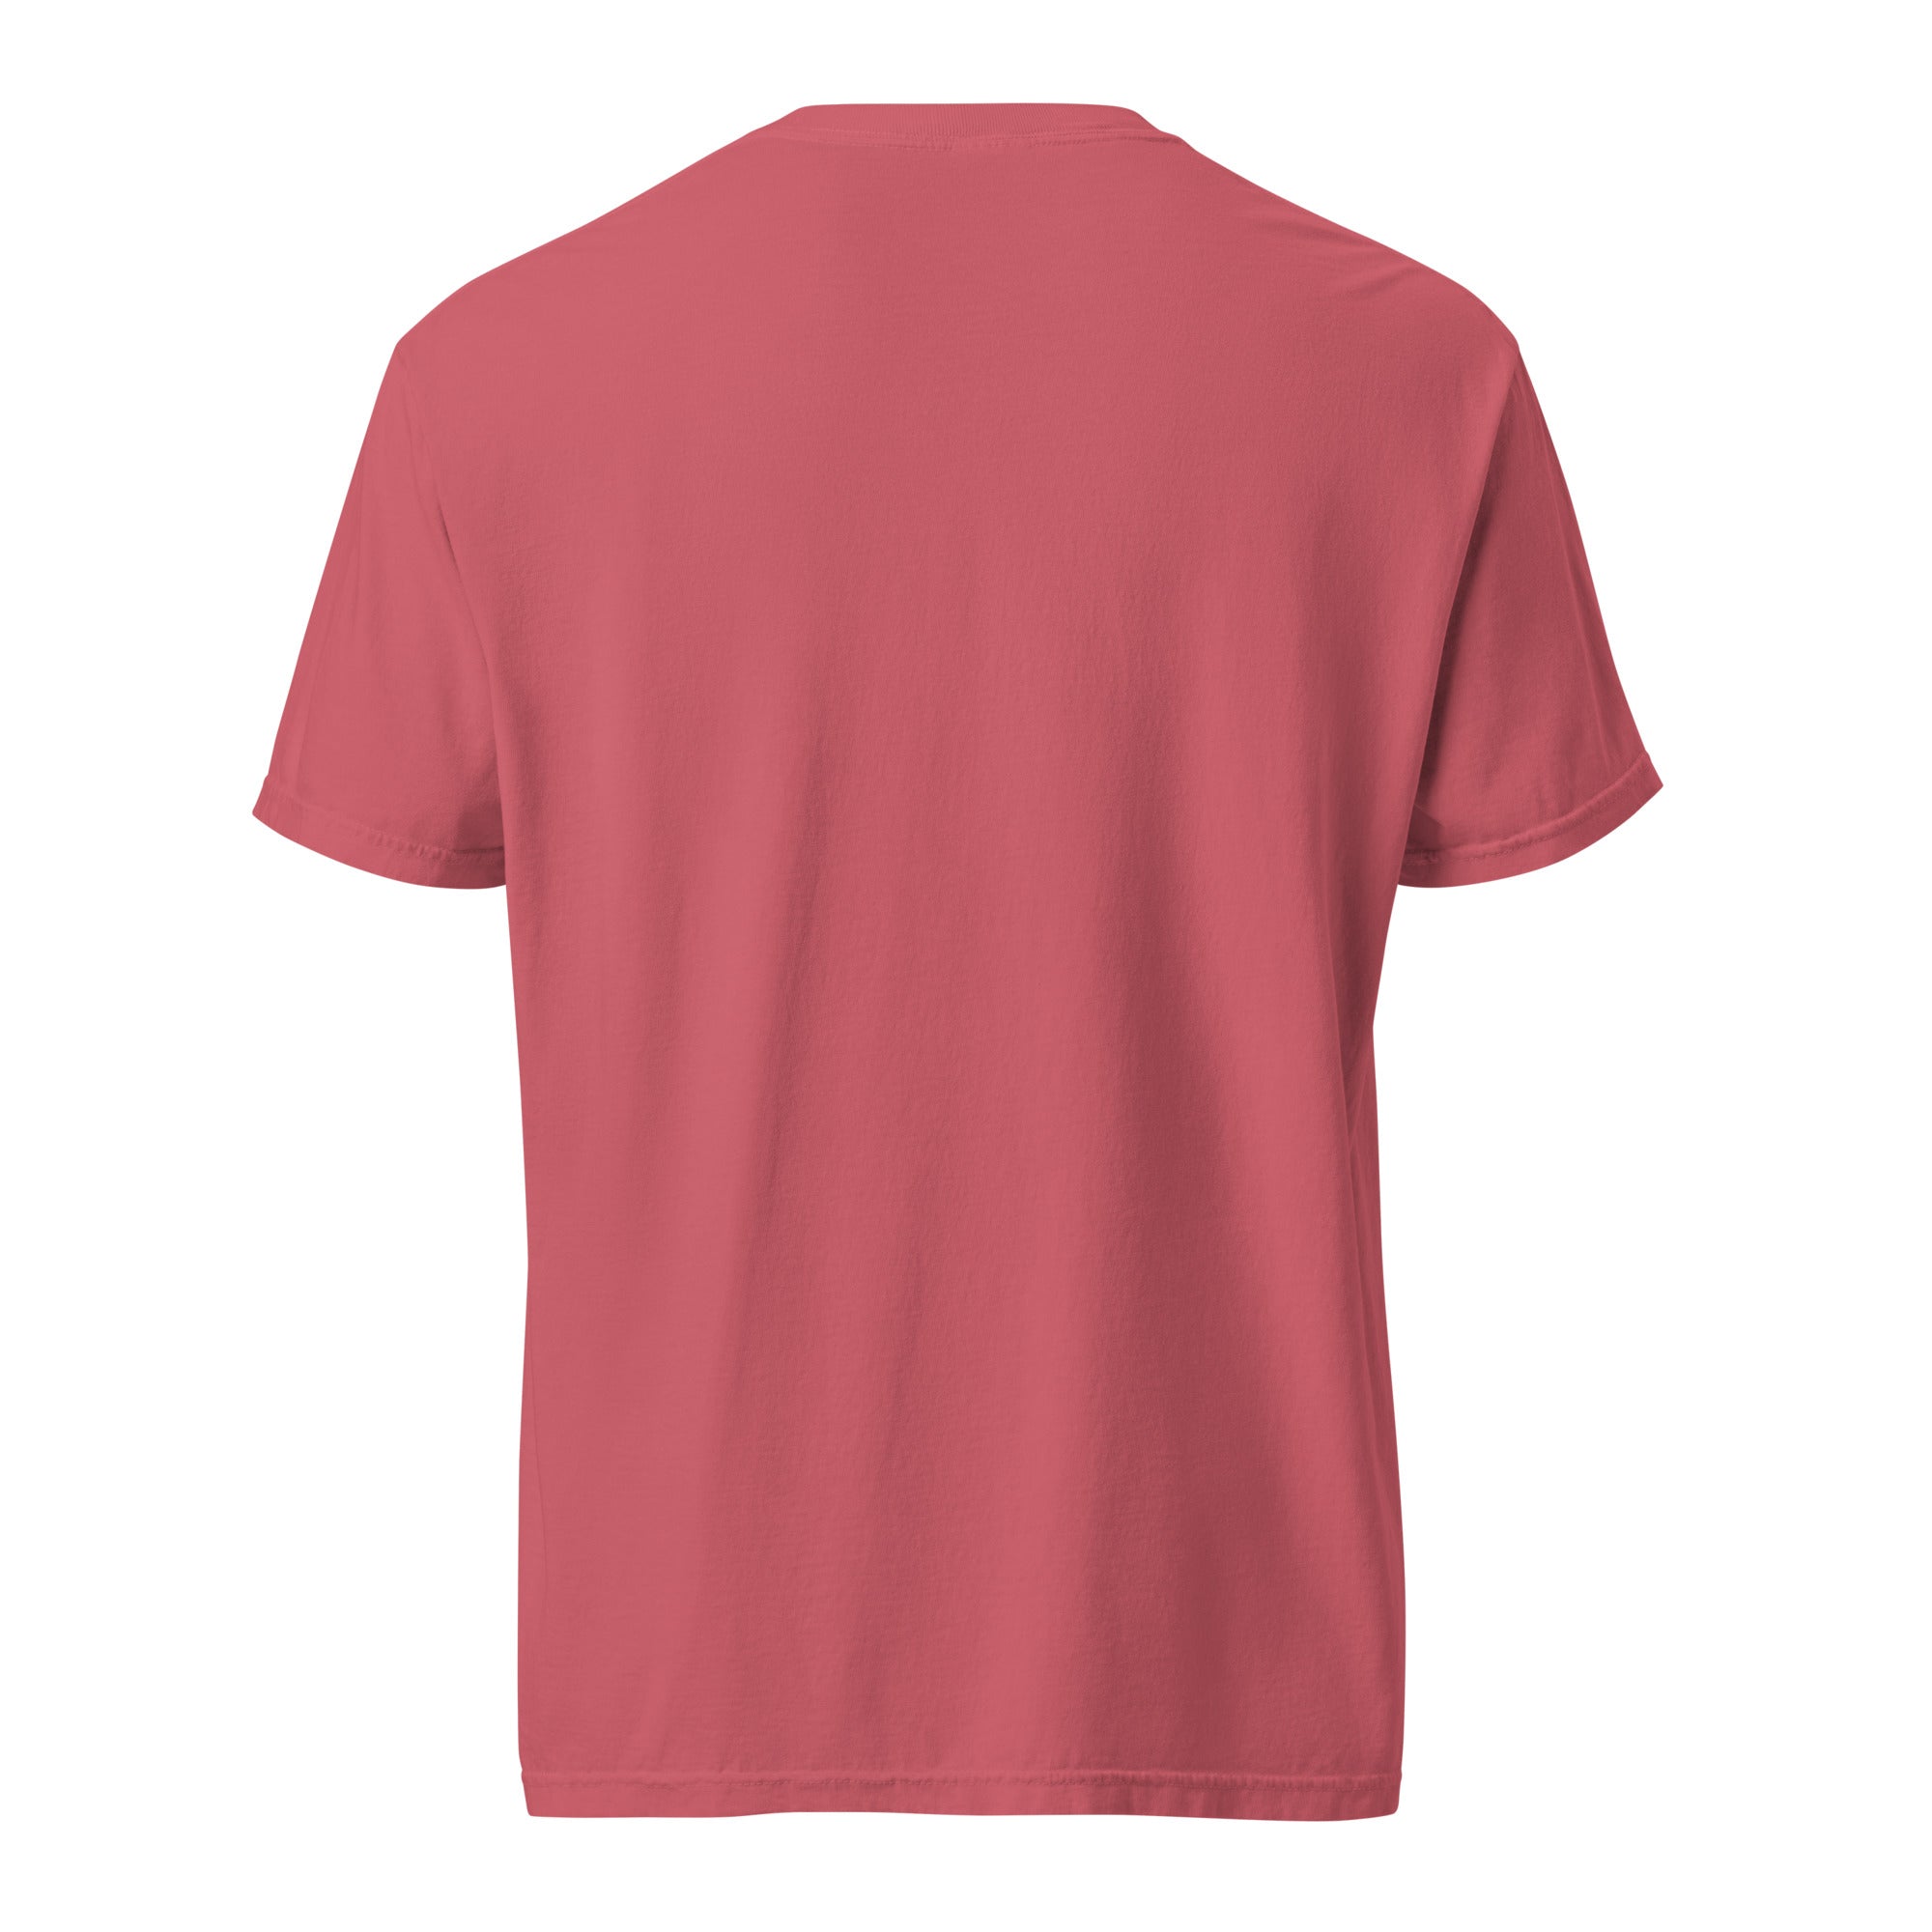 Rugby Imports Triad RFC Garment Dyed T-Shirt